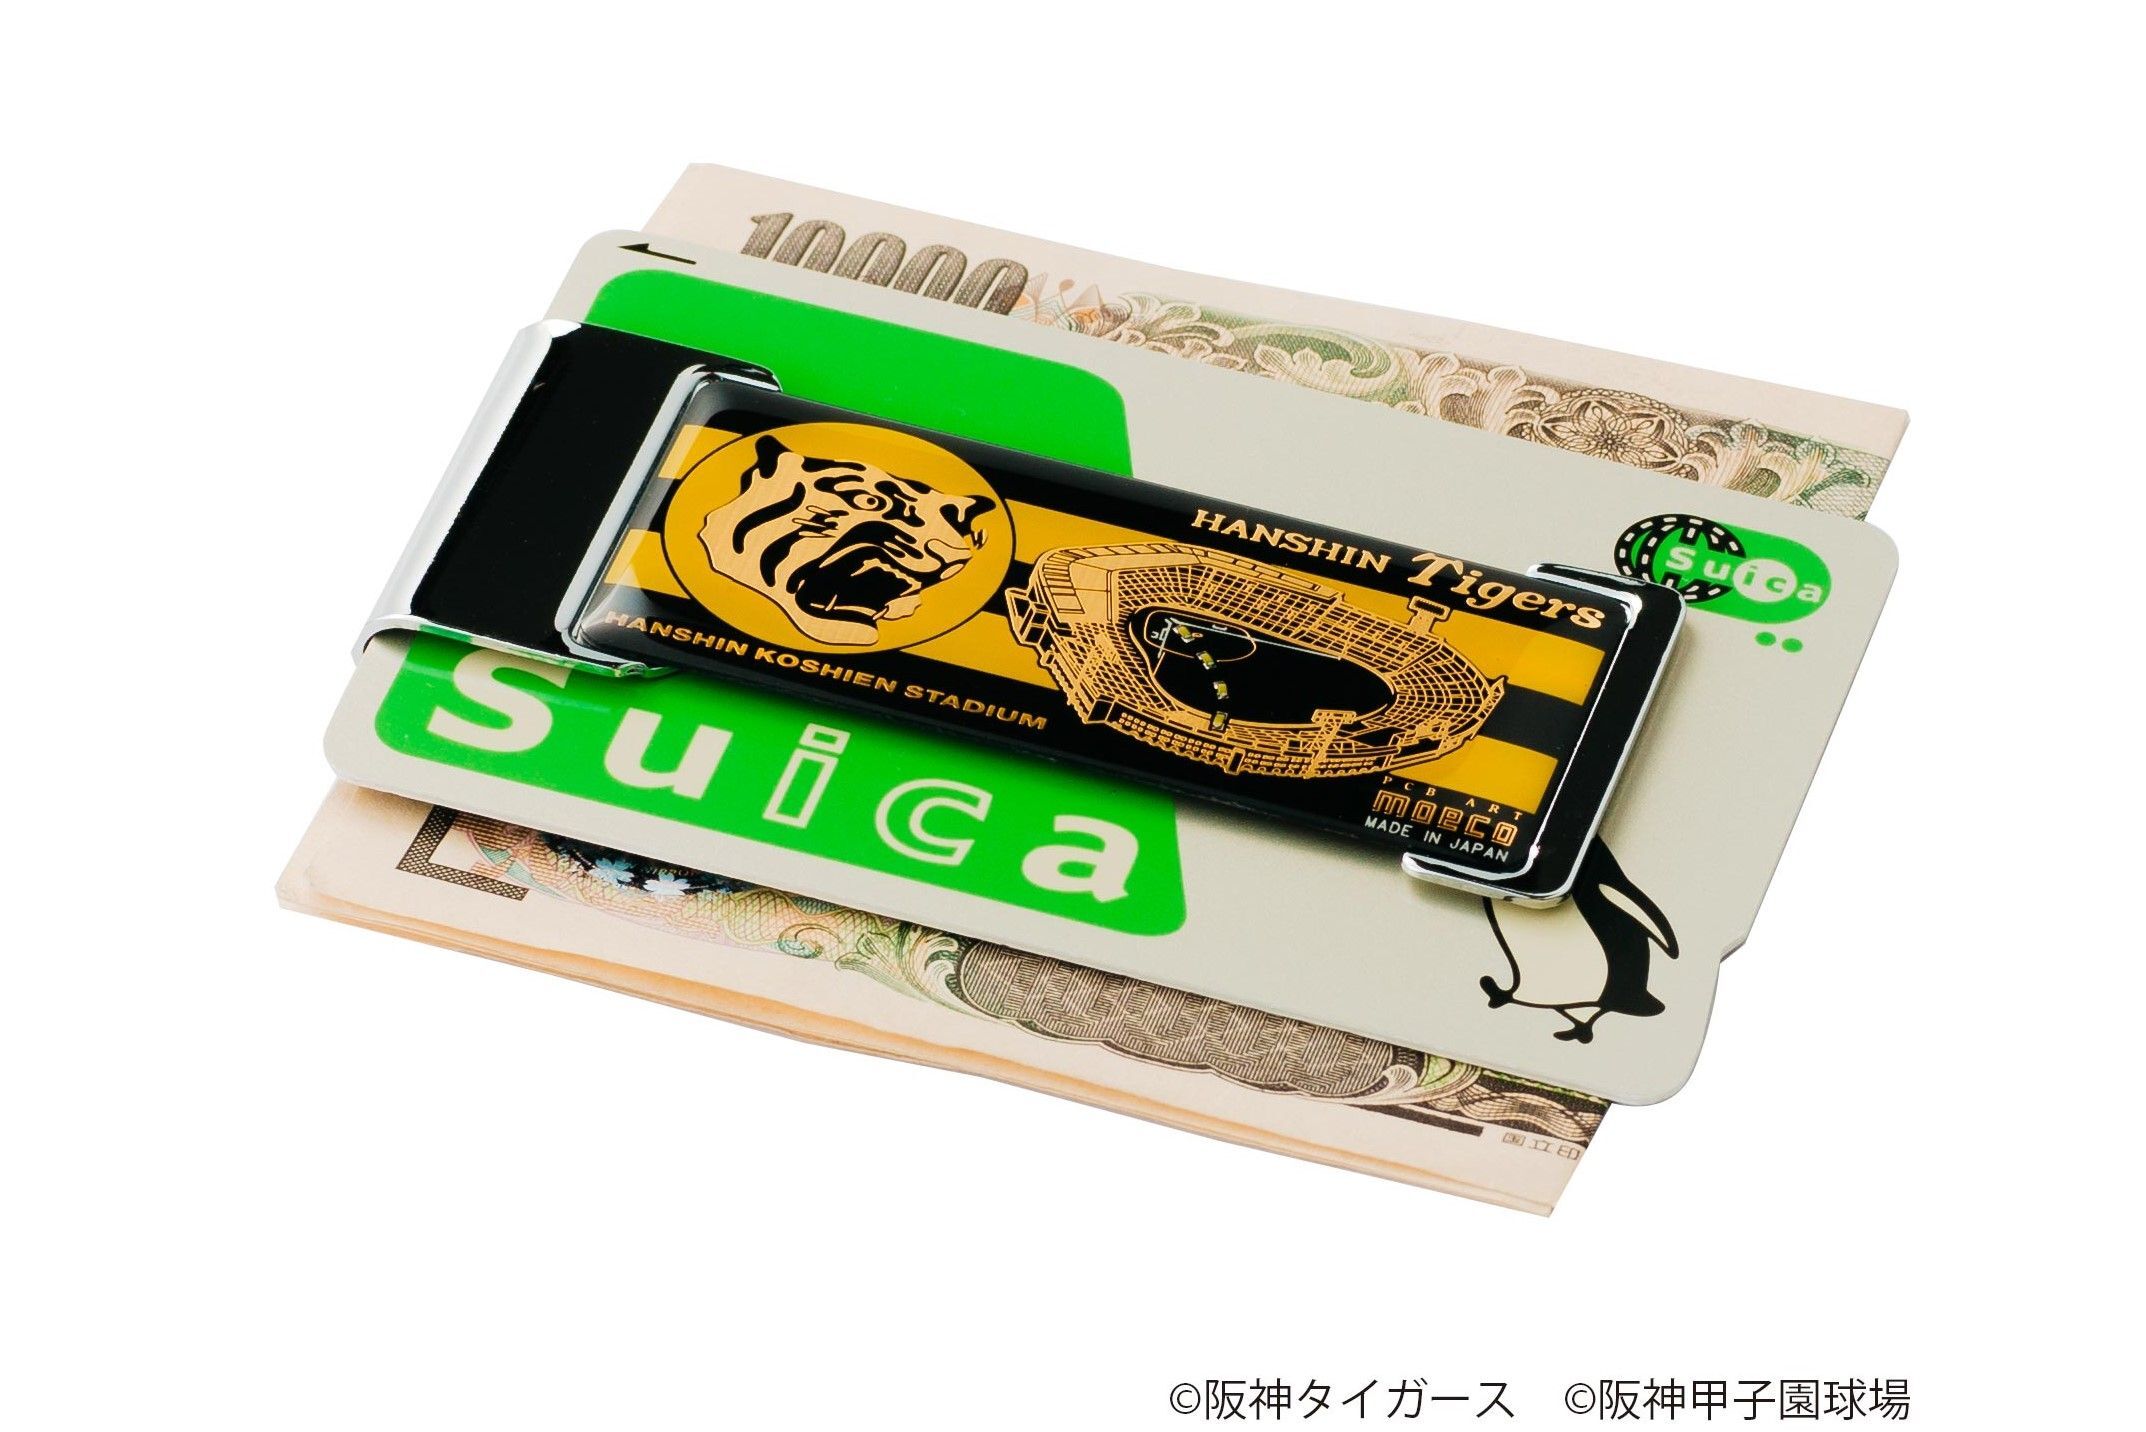 タイガース＆甲子園デザインのギミック付きICカード入れ 改札のタッチ